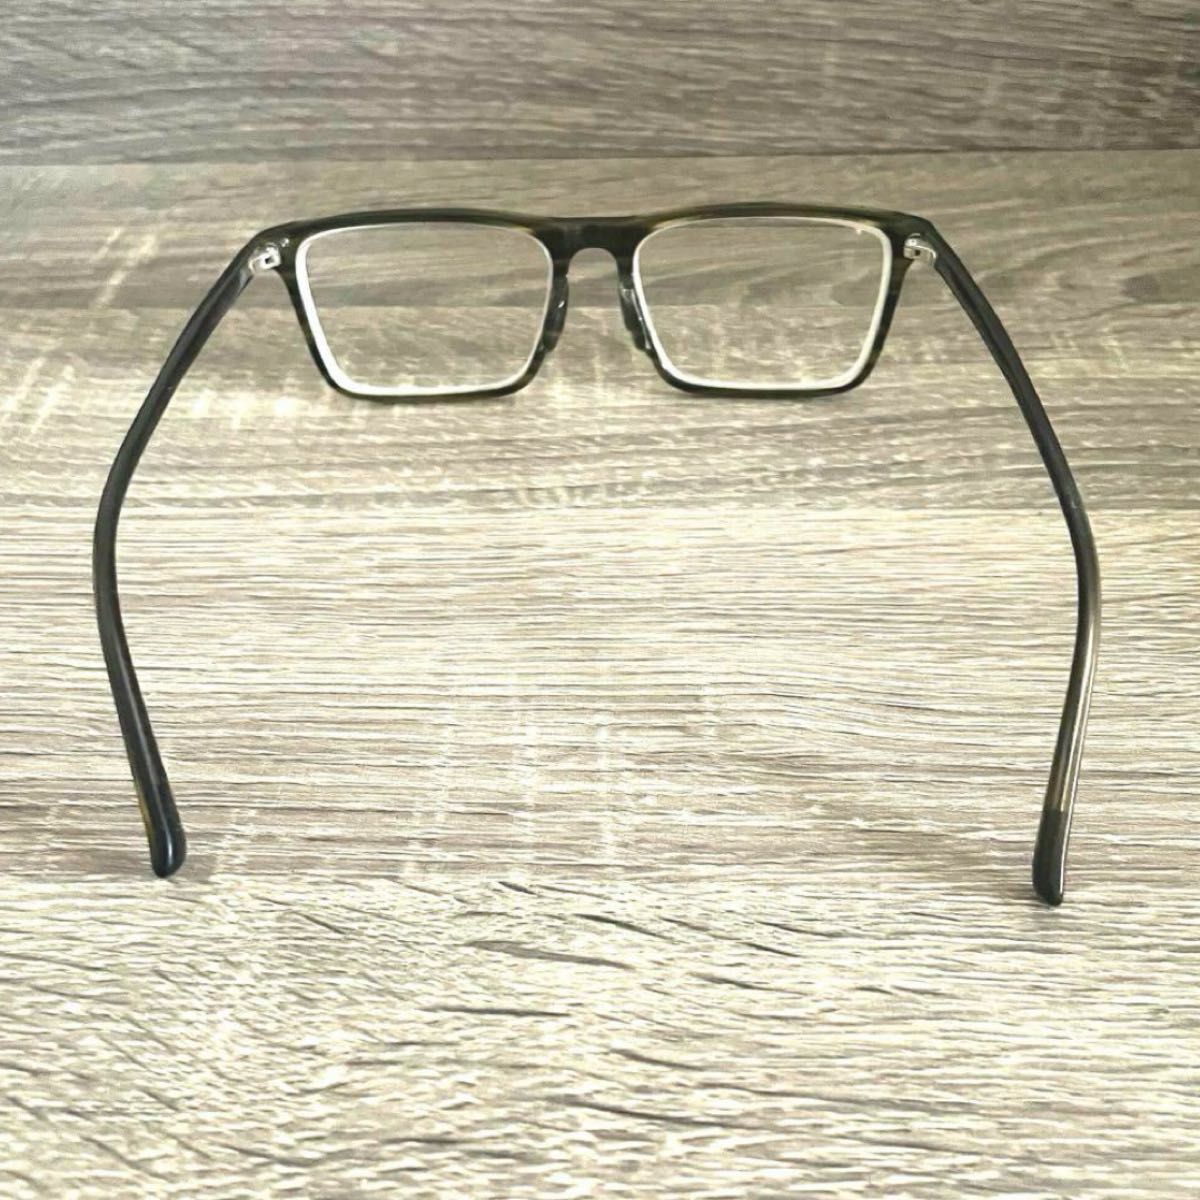 JINS 眼鏡 2本セット